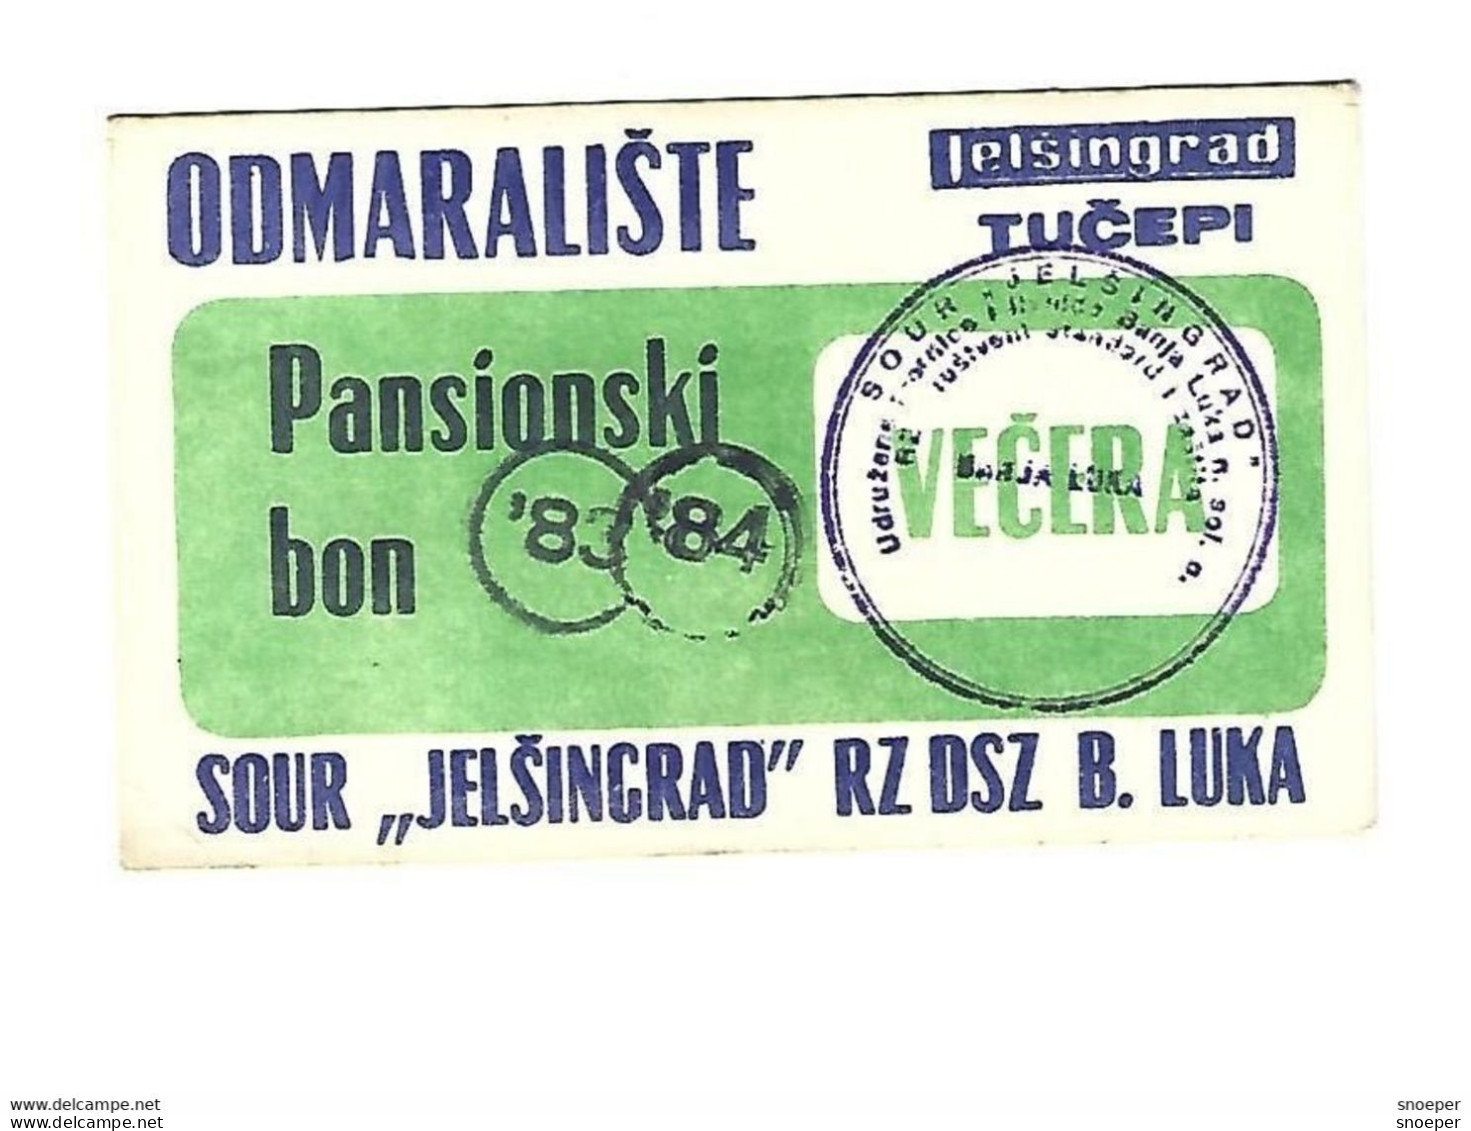 *croatia Tucepi Vacation Center Jelsingrad Diner Voucher  1983-84   1 Round Stamp  C37 - Croacia